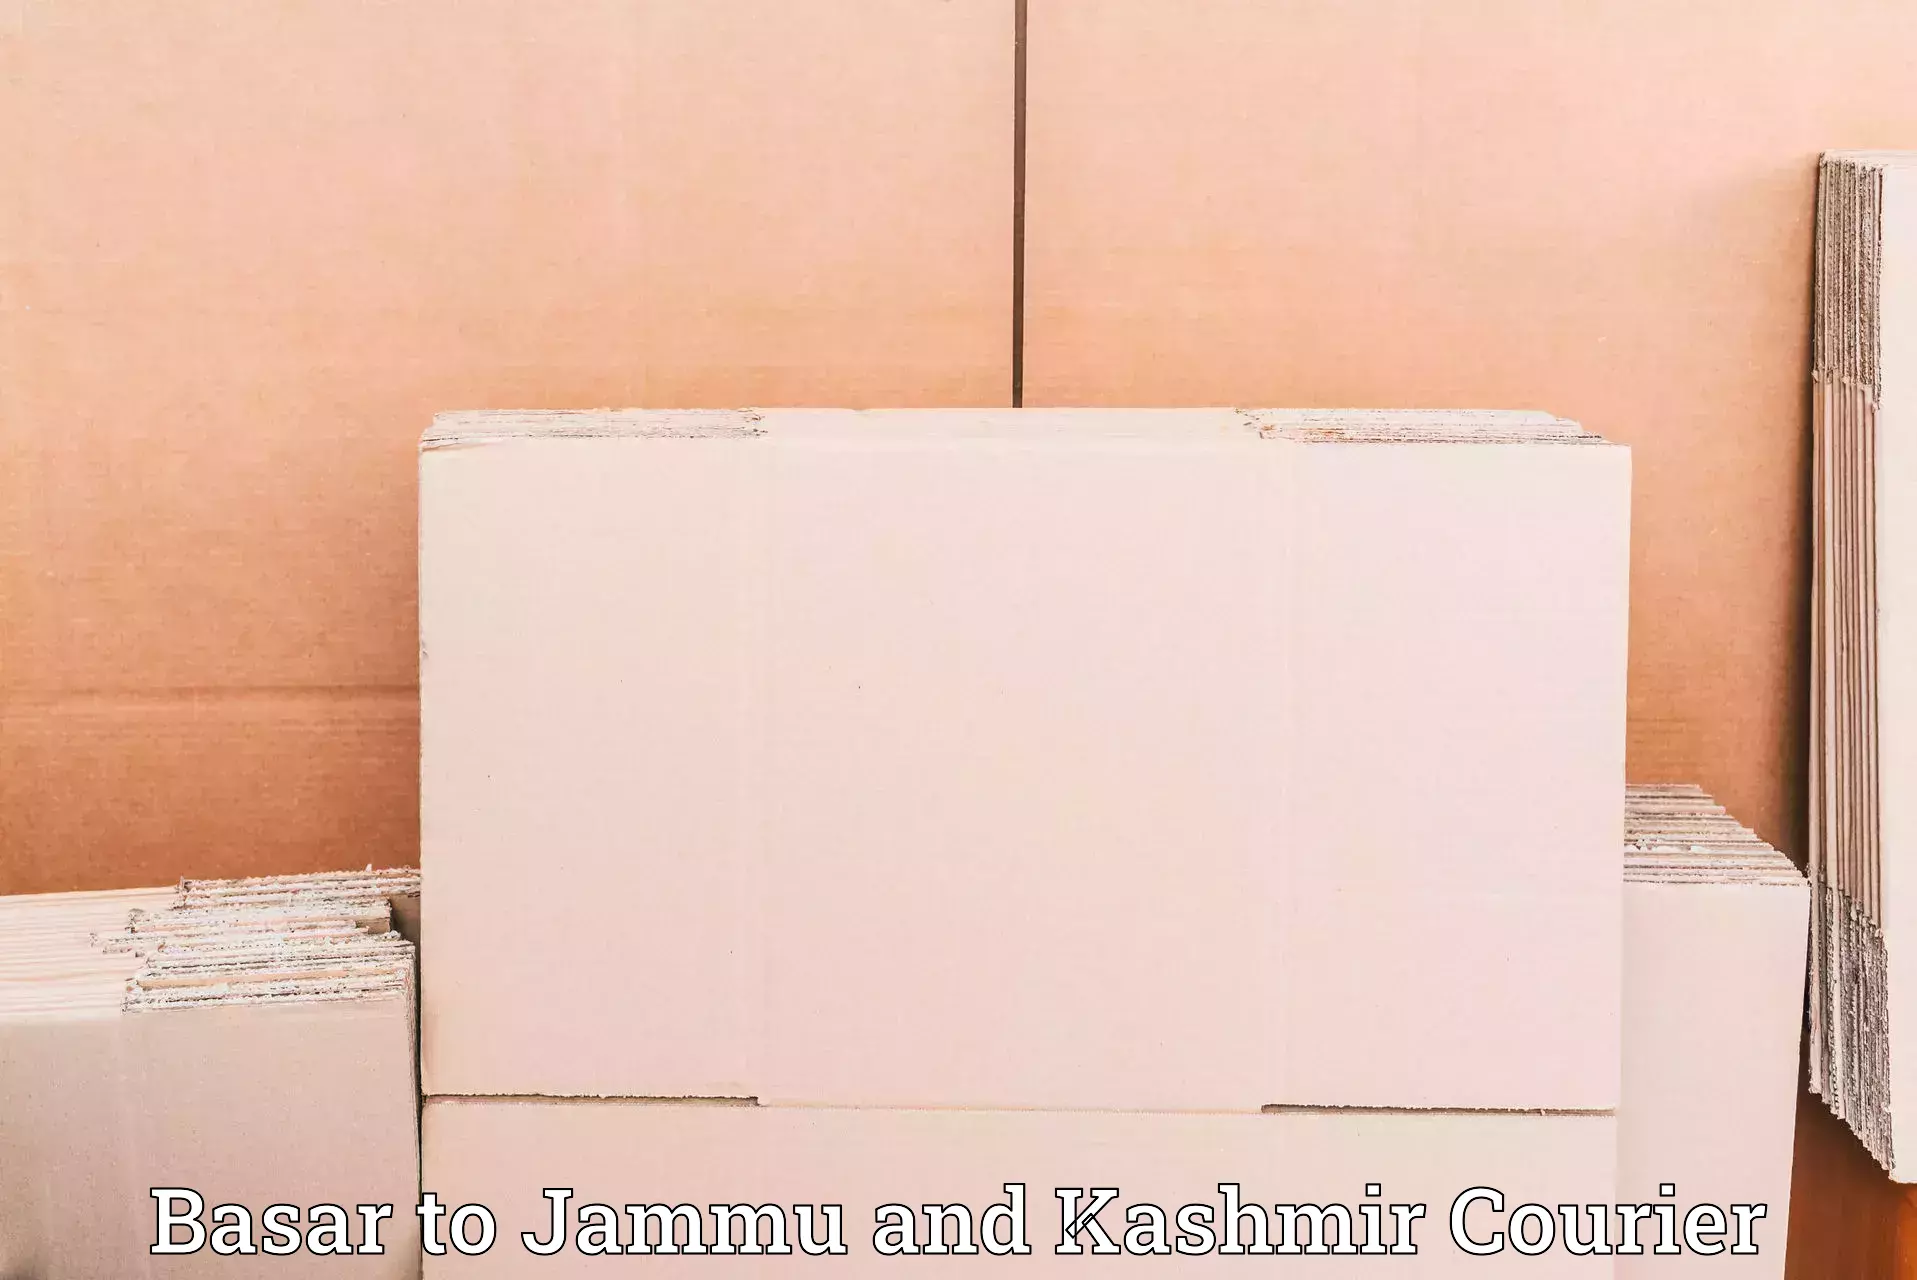 Online shipping calculator in Basar to Srinagar Kashmir